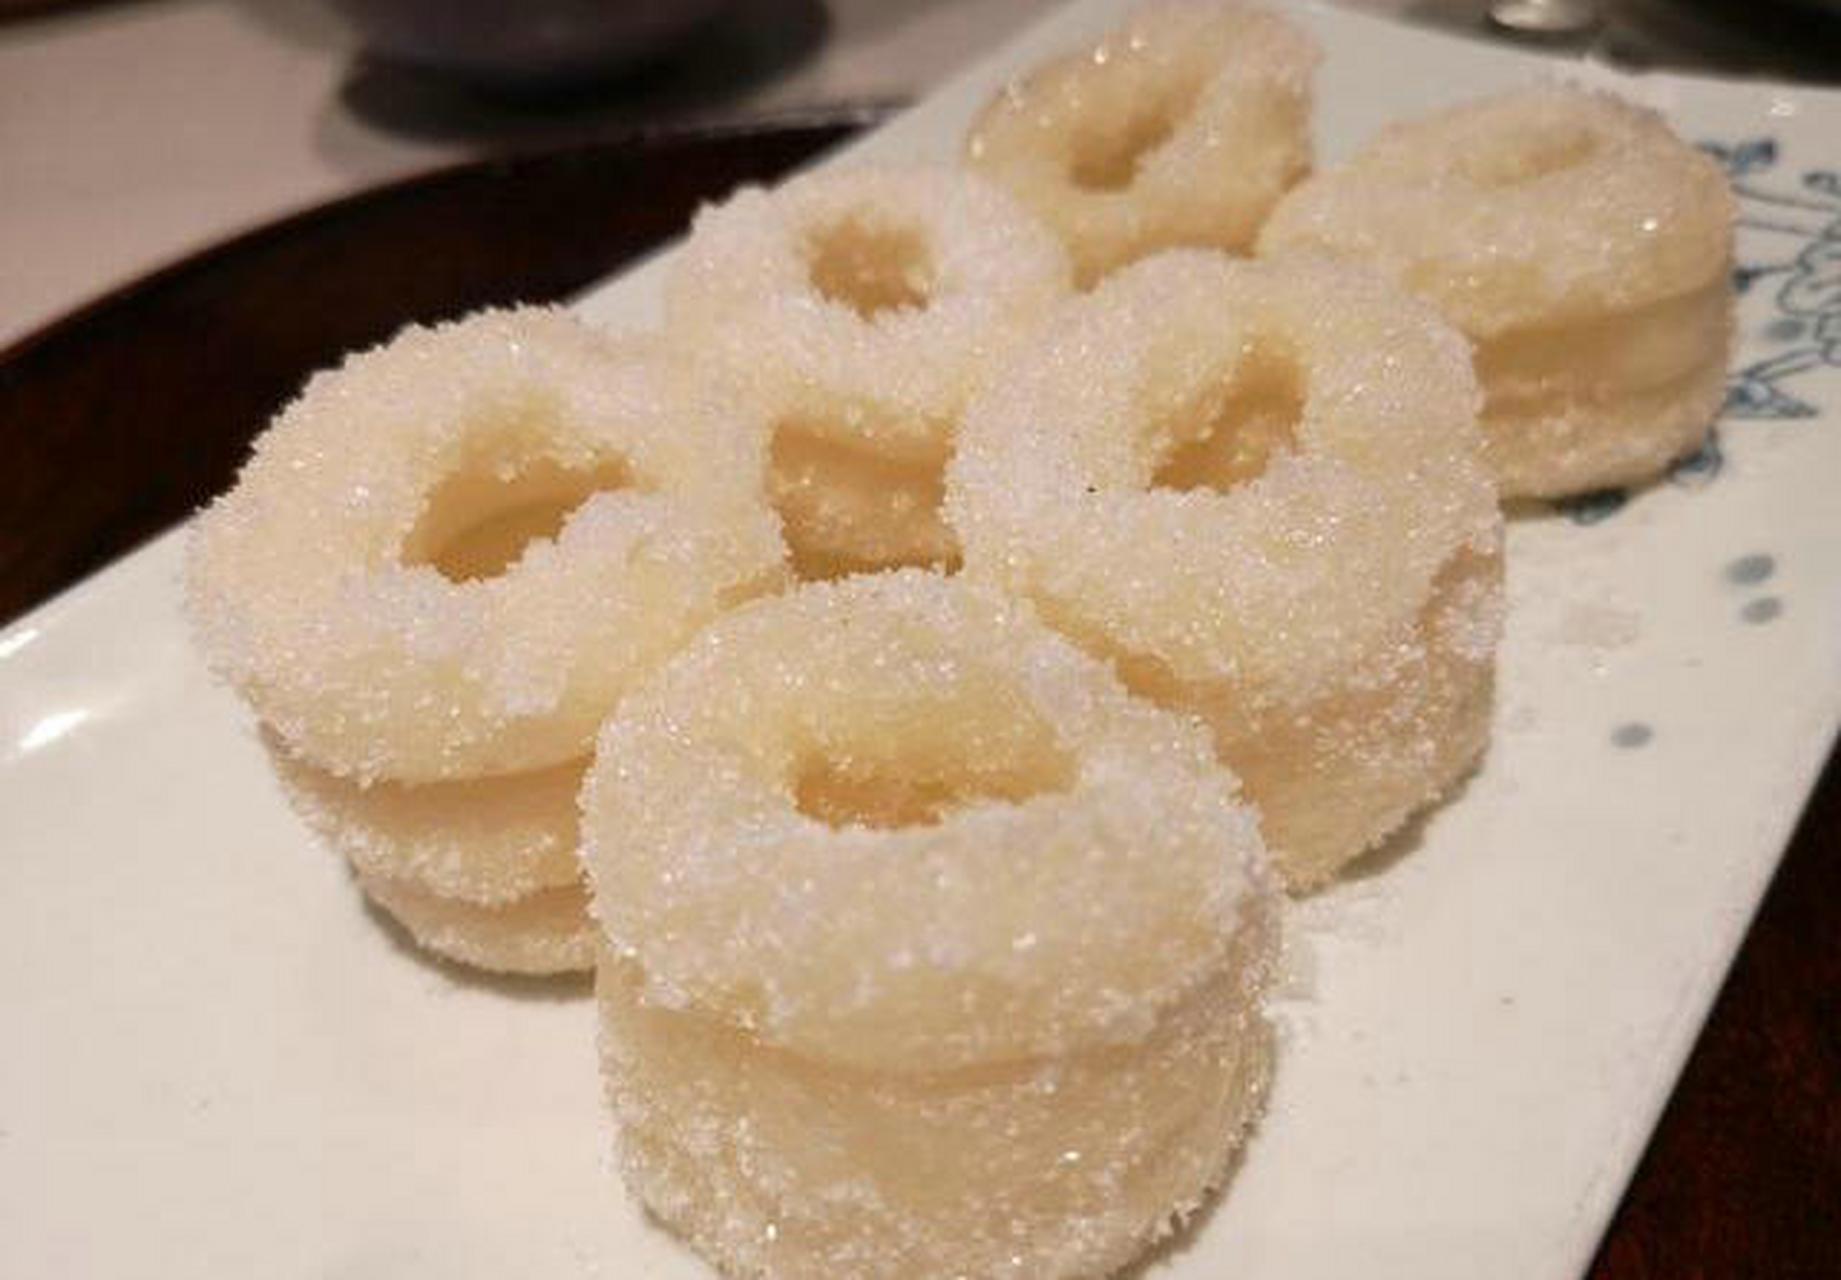 白糖糕是江西南昌的一款传统特色小吃,主要用糯米,白糖制作而成,具有